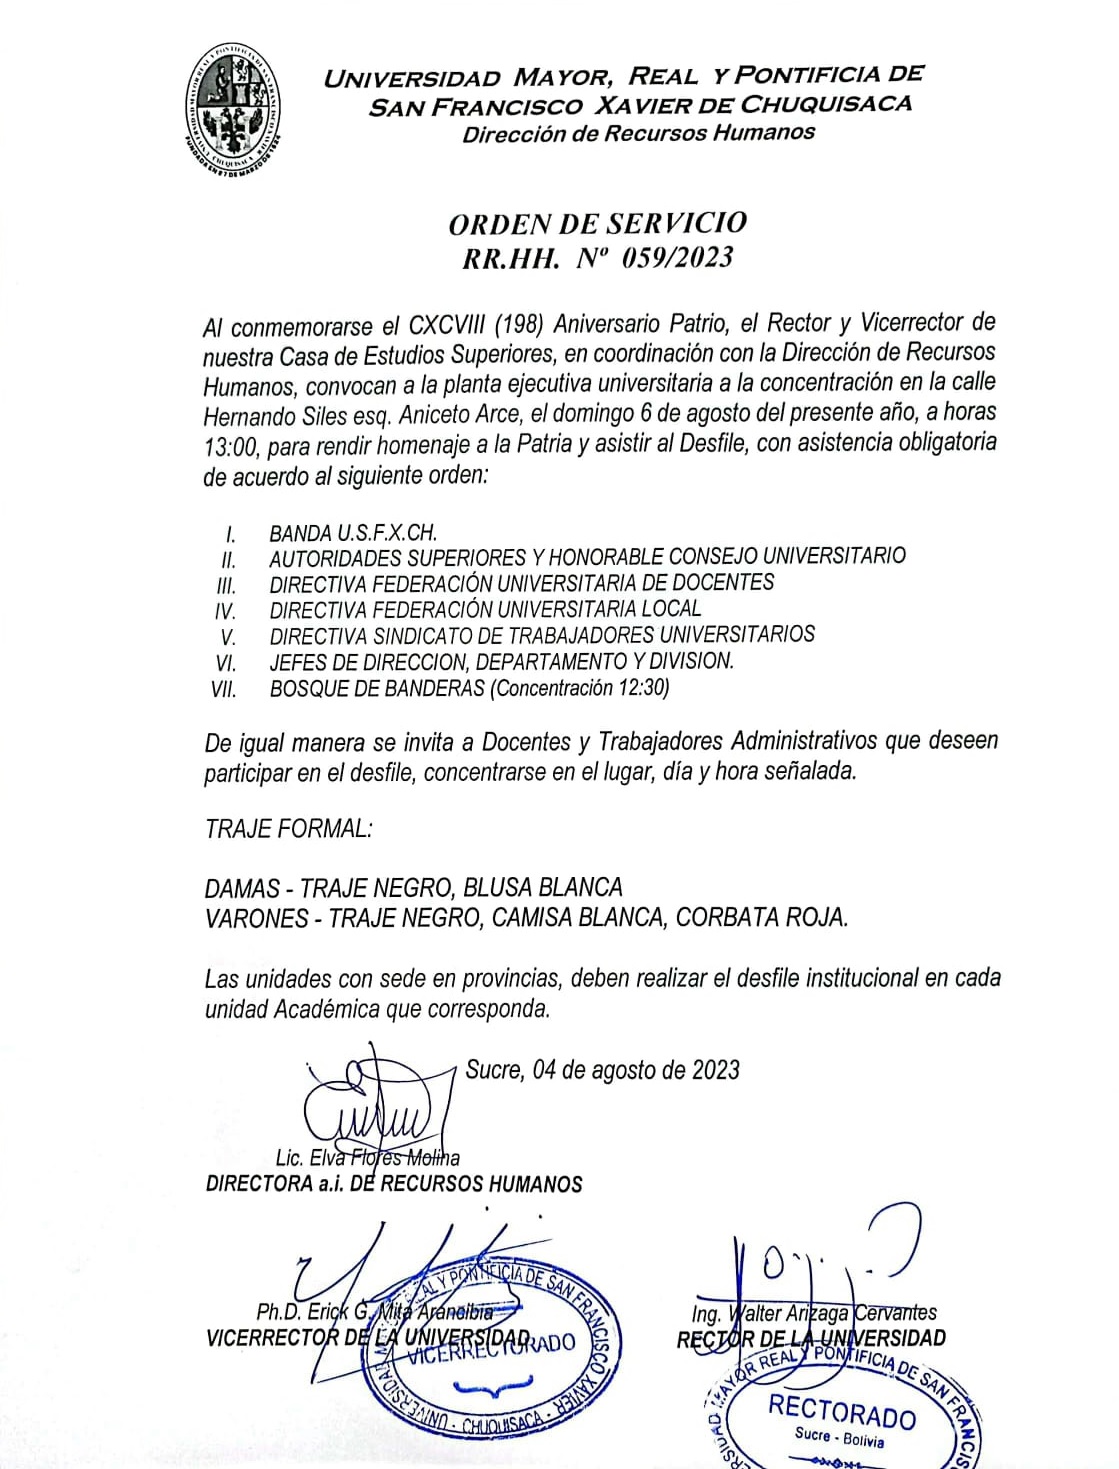 ORDEN DE SERVICIO RR.HH. Nº 059/2023, DESFILE CÍVICO PATRIO.